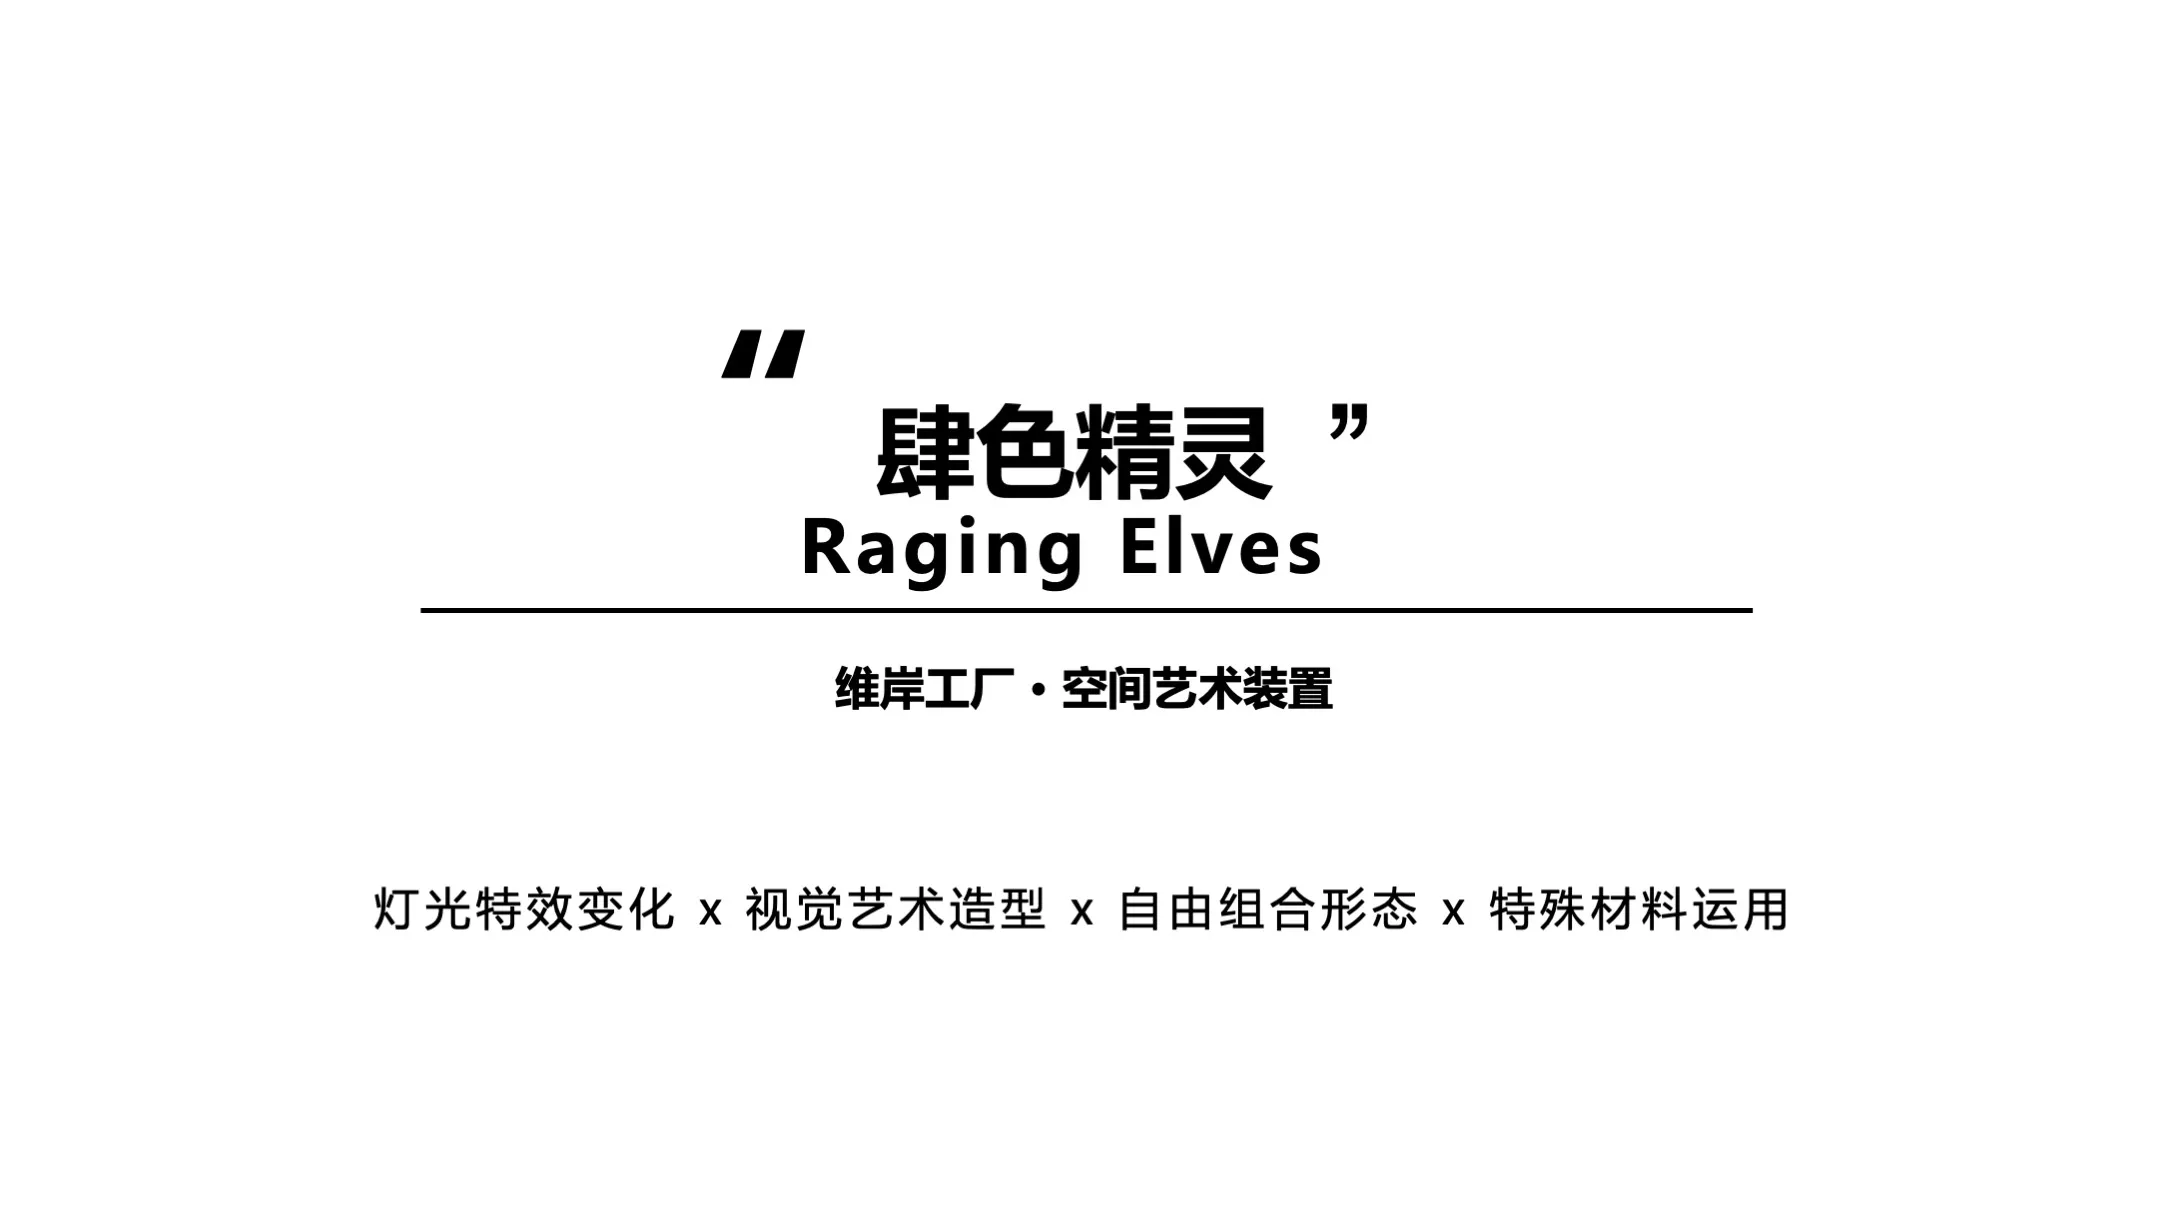 【肆色精灵】Raging Elves空间艺术装置-感映艺术